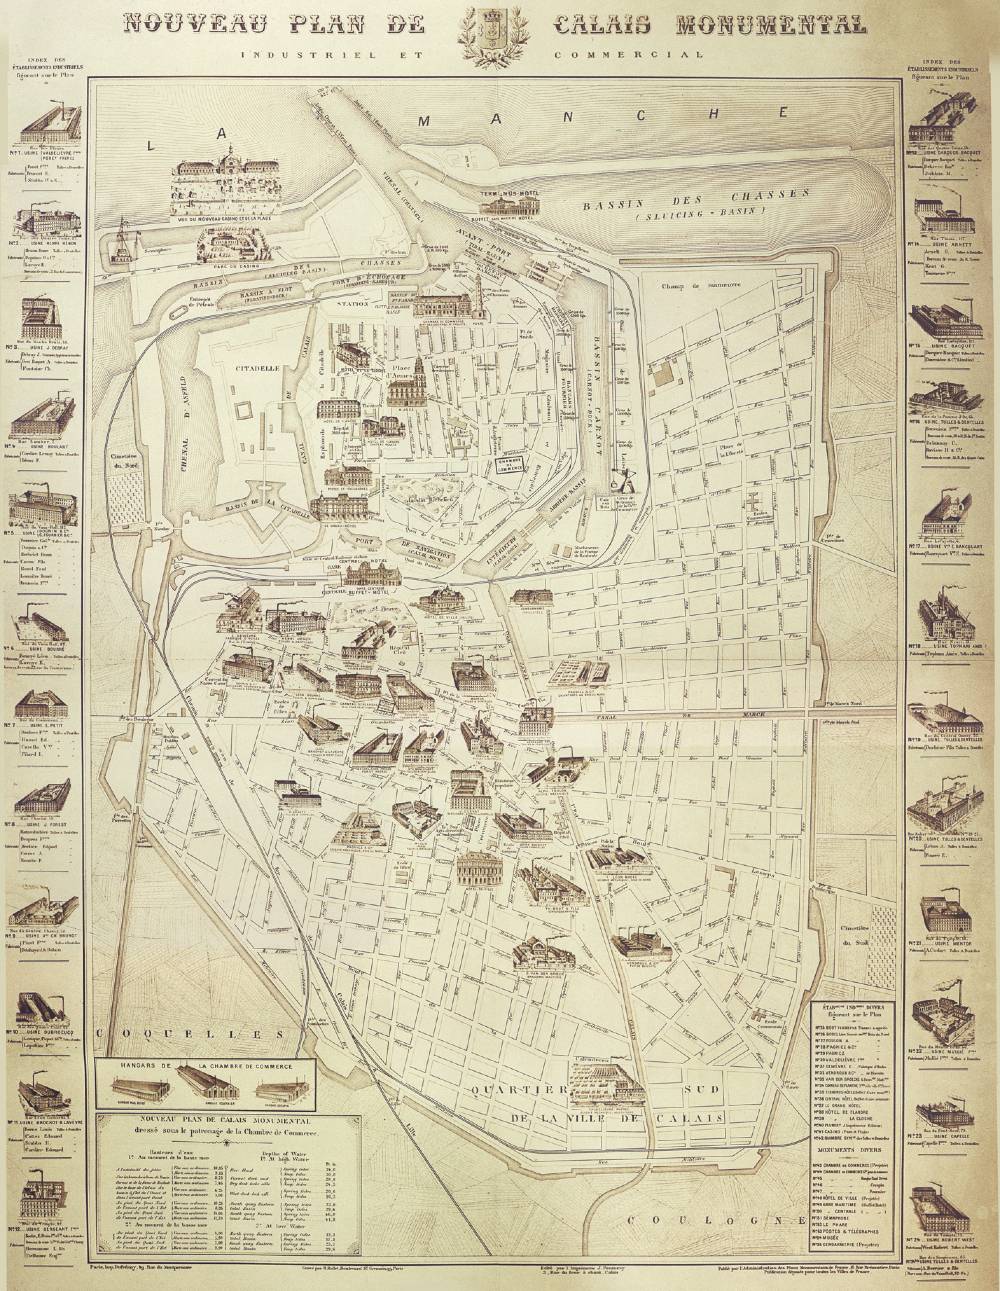 Map showing lace factories in Calais, France, late 1800s. Reproduced courtesy Les archives departmentales du Pas-de-Calais and Musee des Beaux-Arts et de la Dentelle